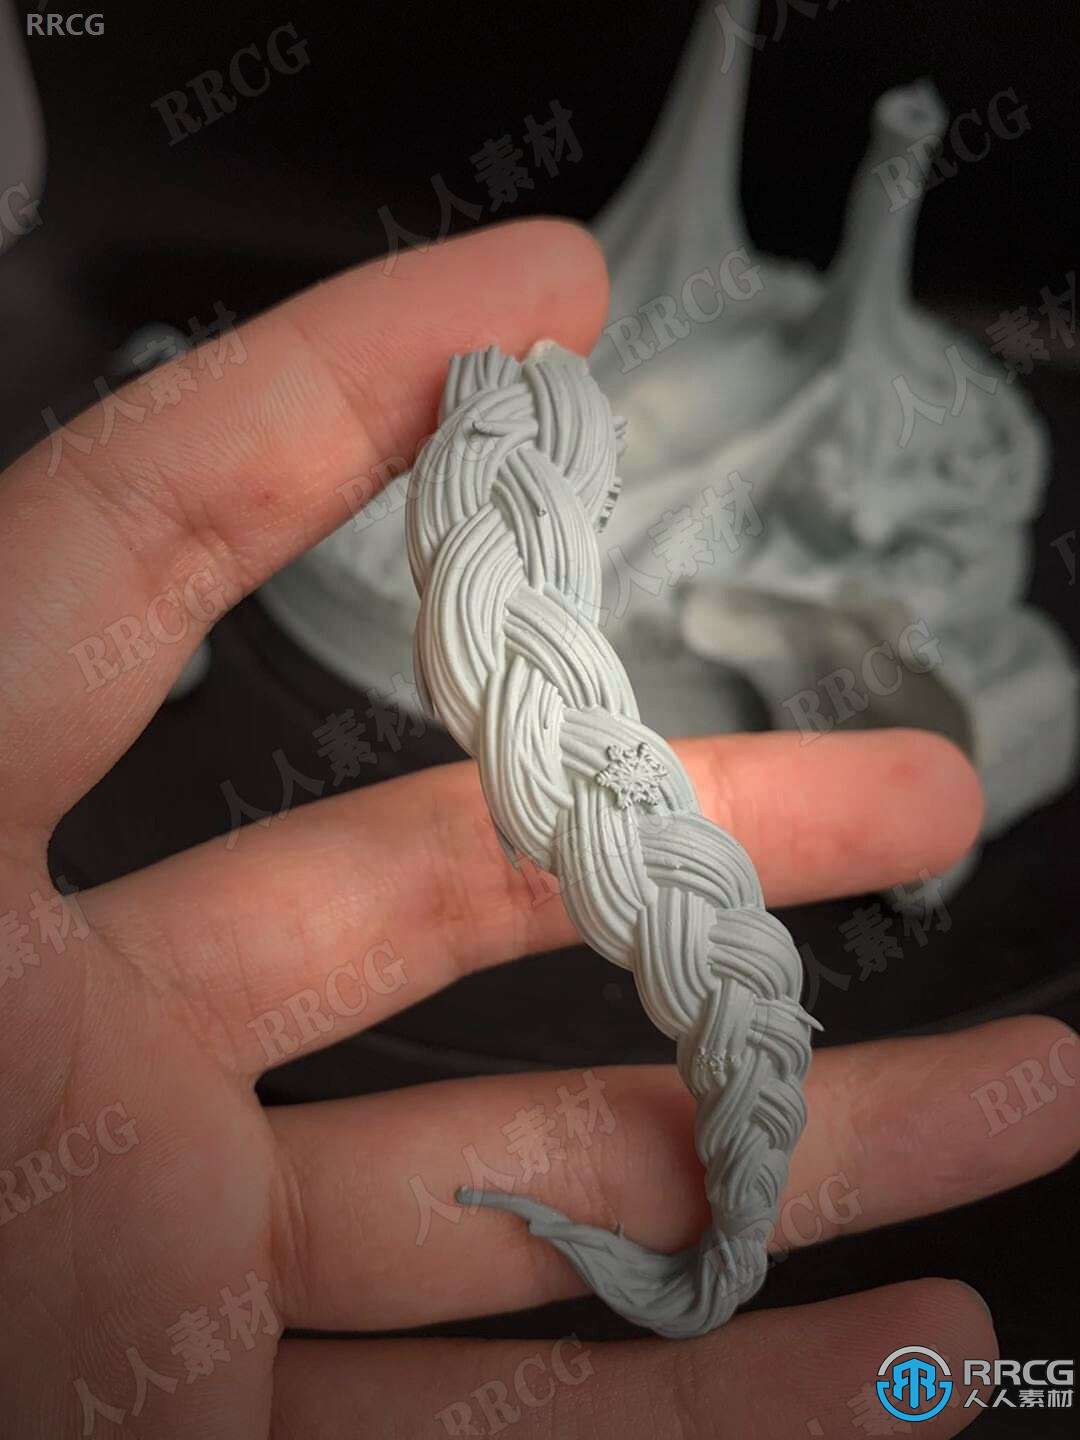 冰雪奇缘艾莎公主角色雕像3D打印模型